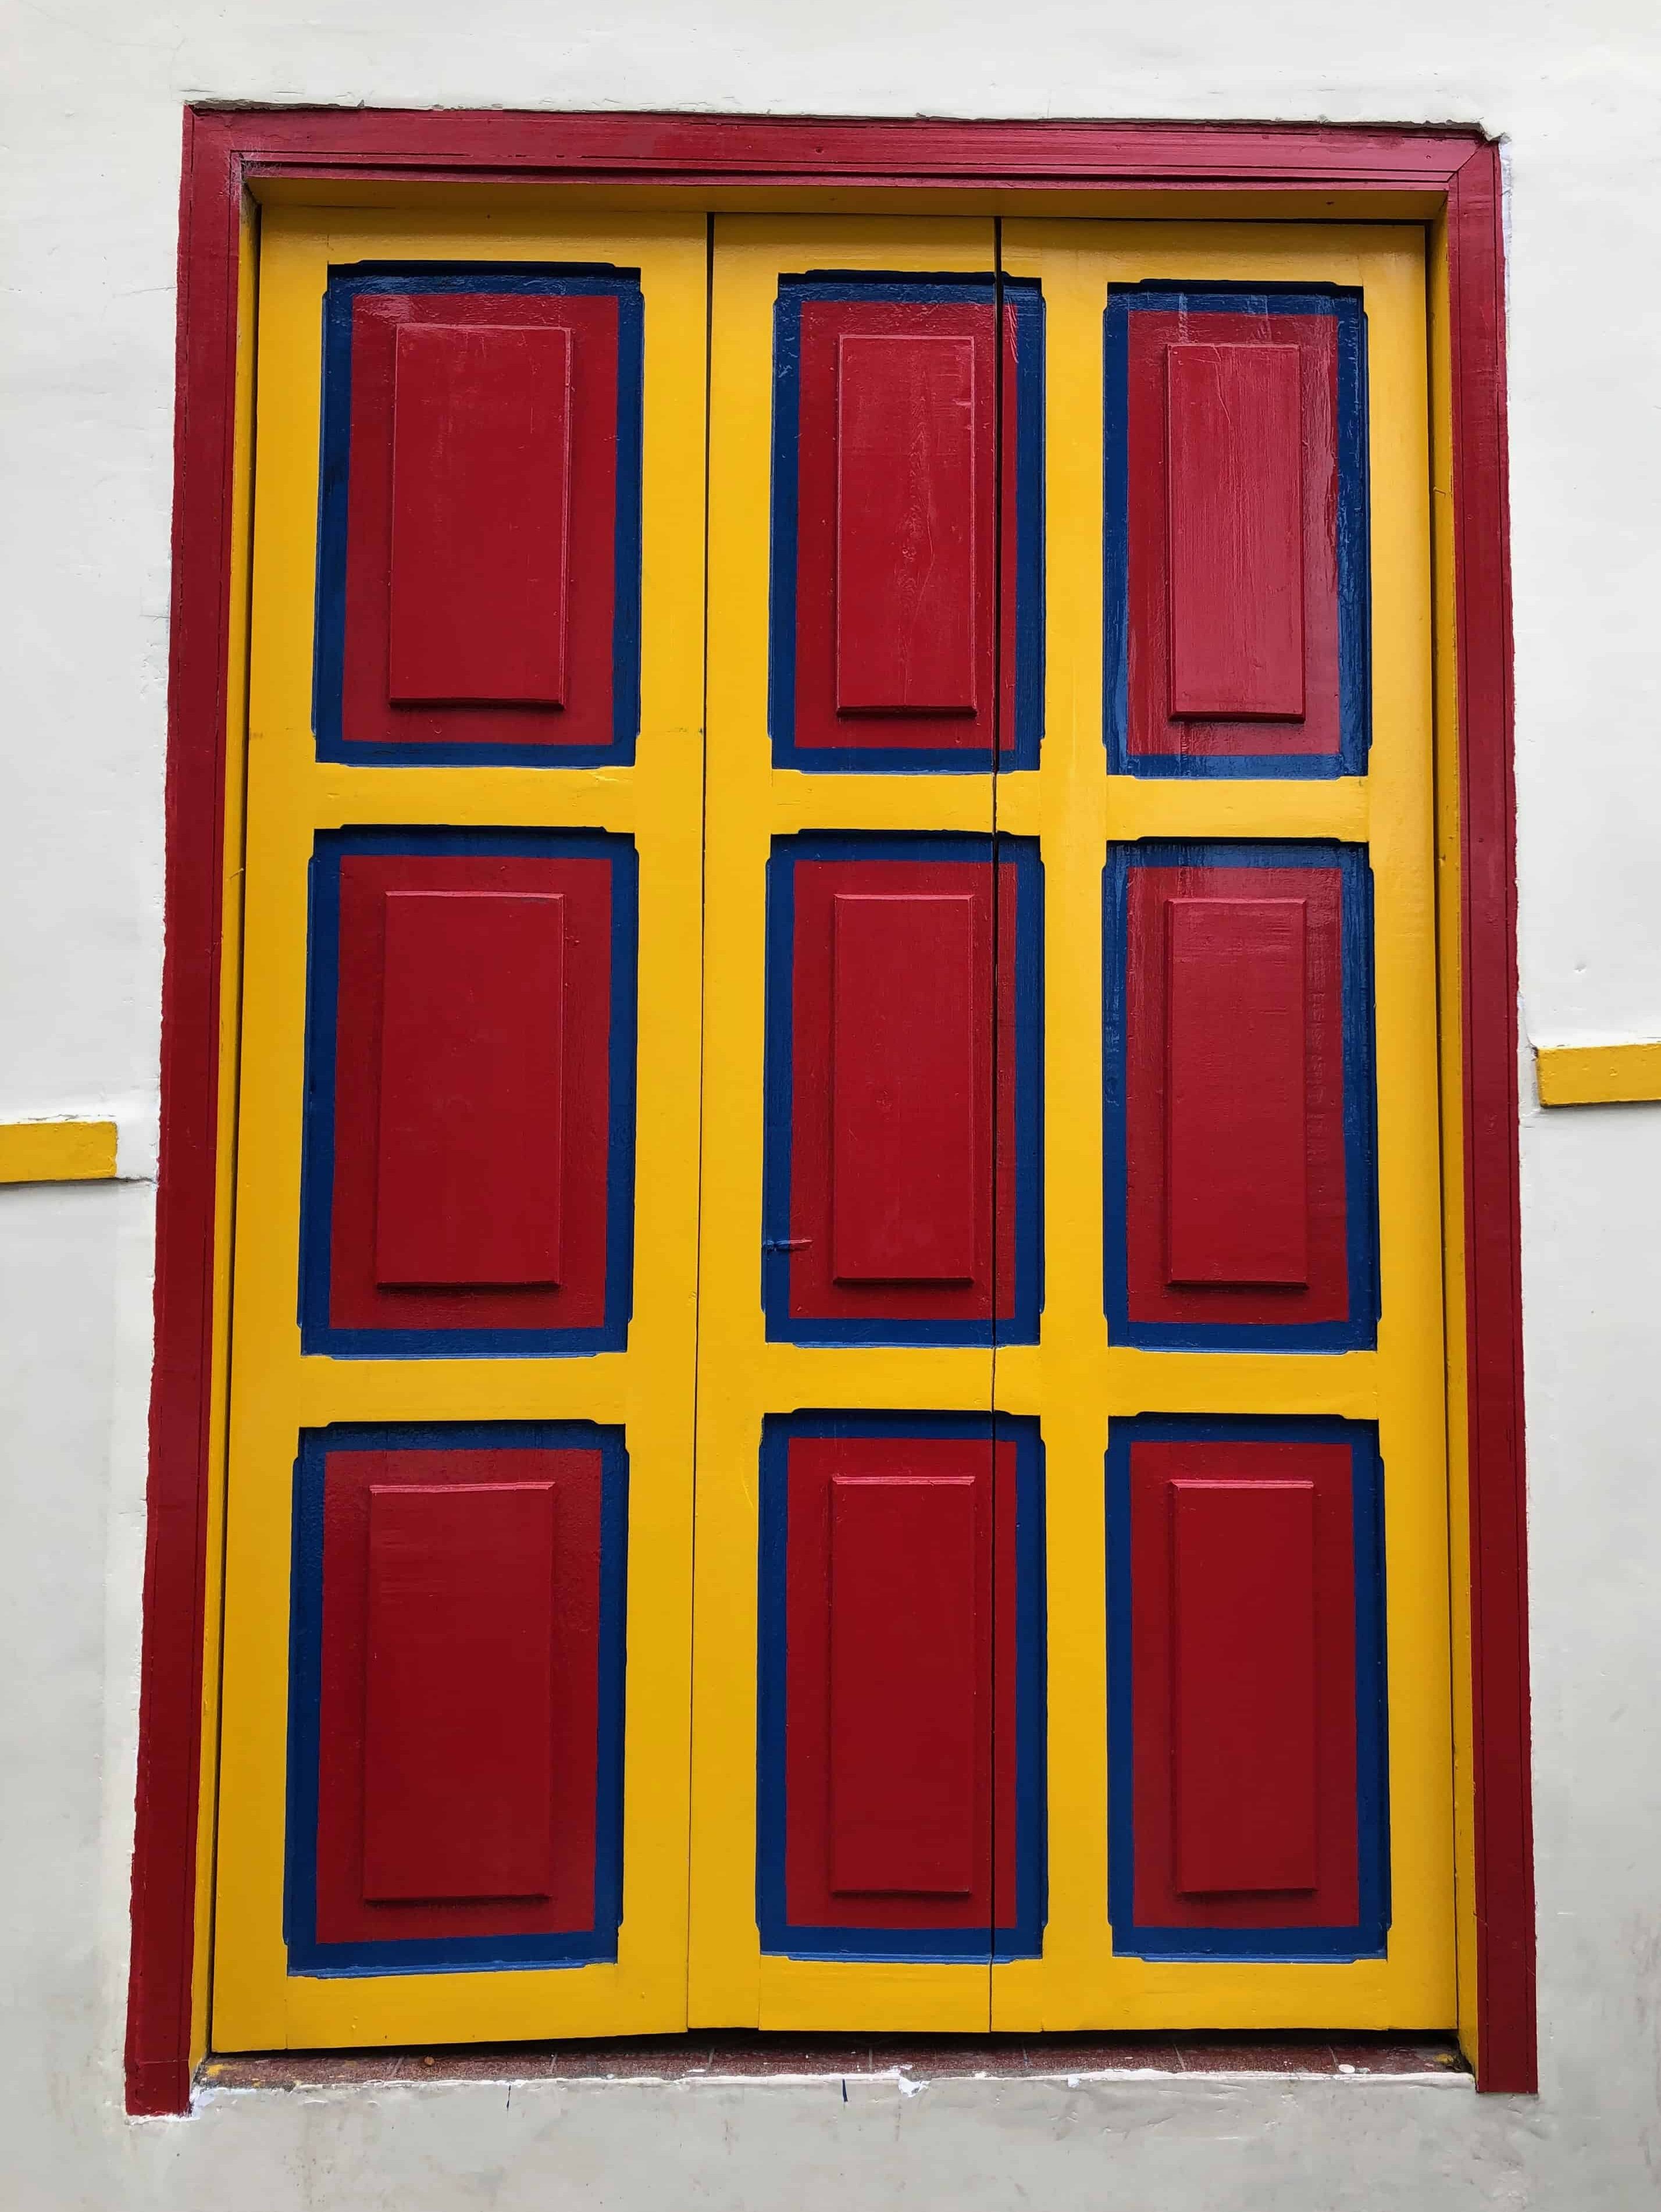 A colorful door